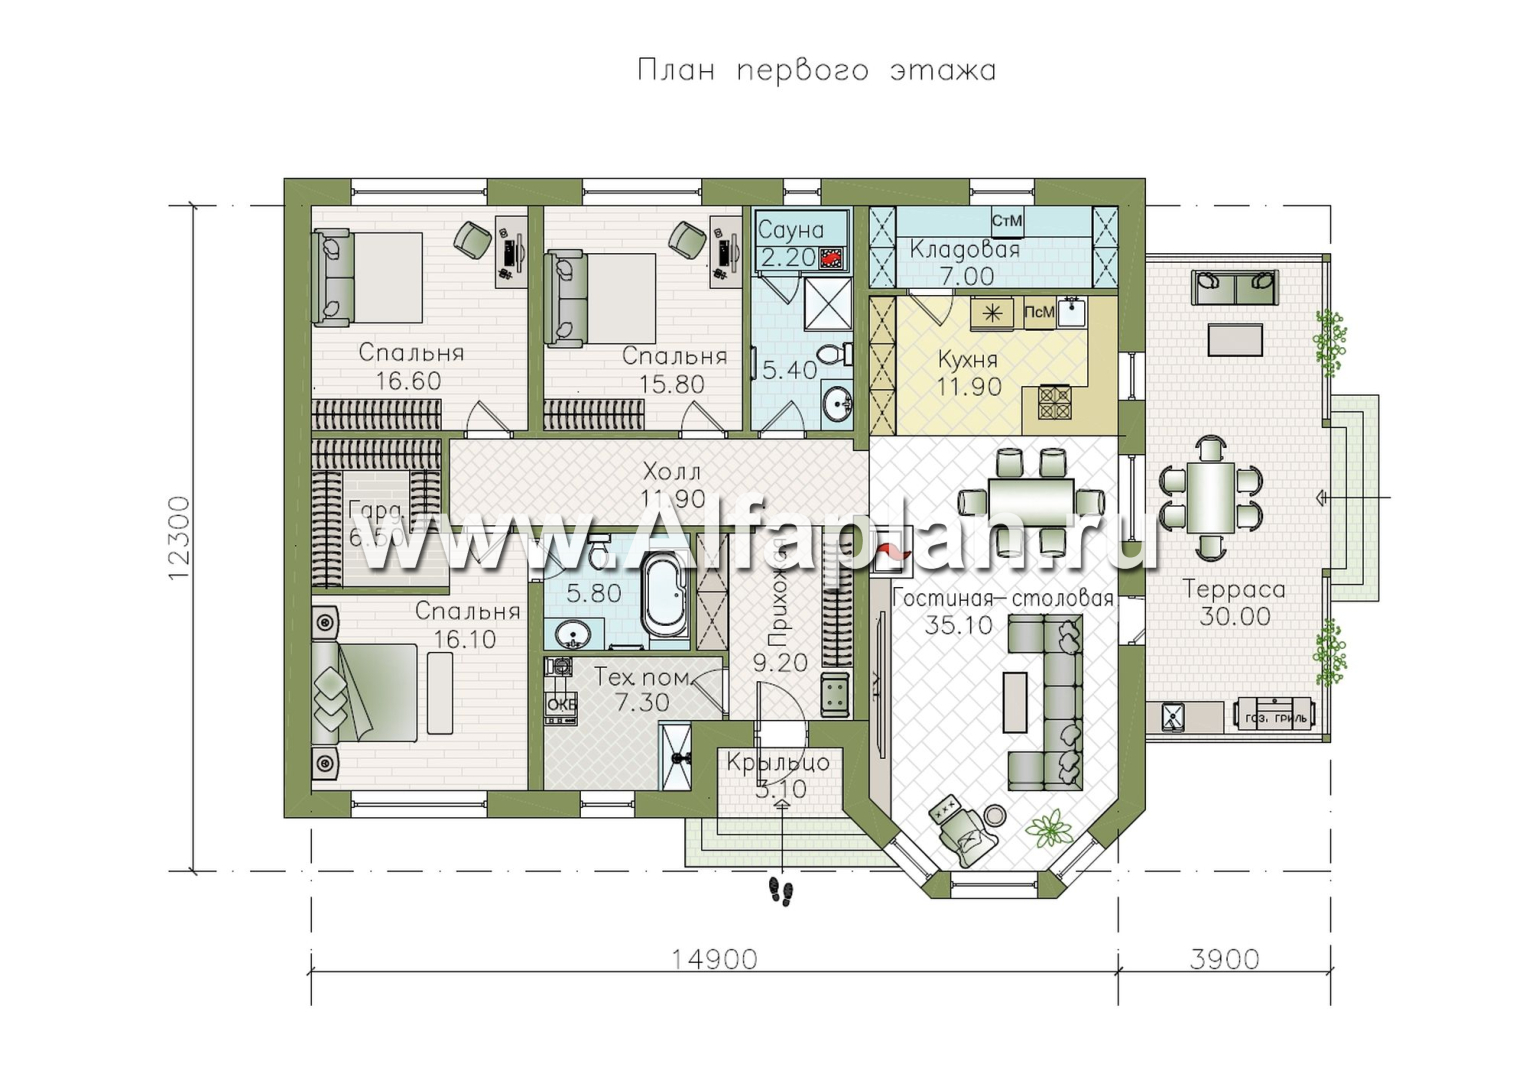 «Розенхайм» - проект одноэтажного дома в баварском стиле, планировка гостиная с эркером, кабинет и 2 спальни, с террасой  - план дома